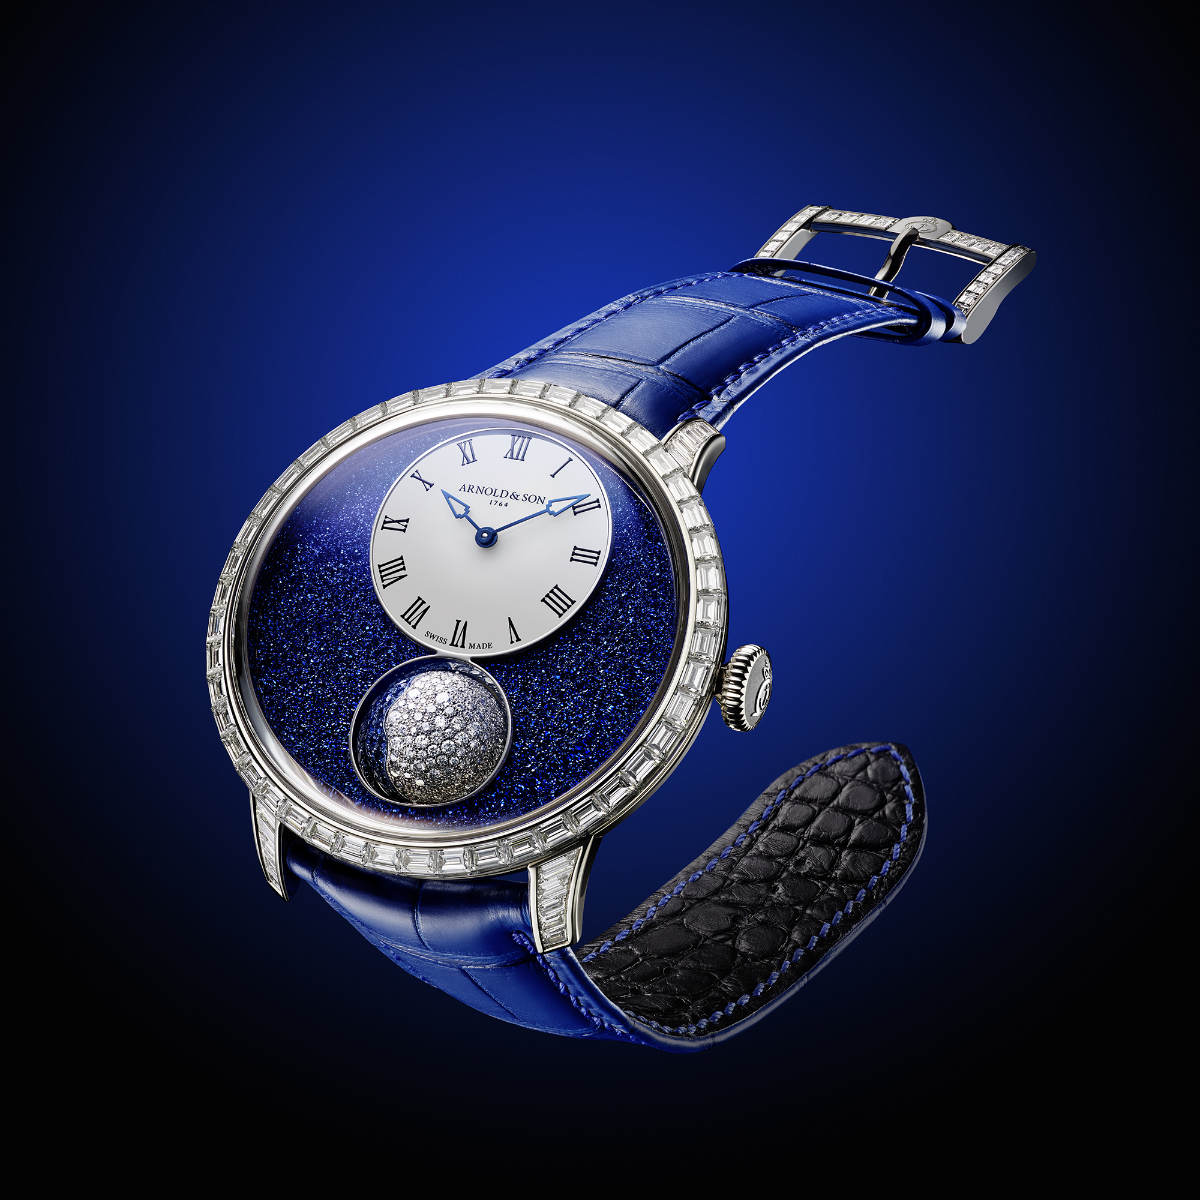 Watches | Arnold & Son, Manufacturer, British Heritage